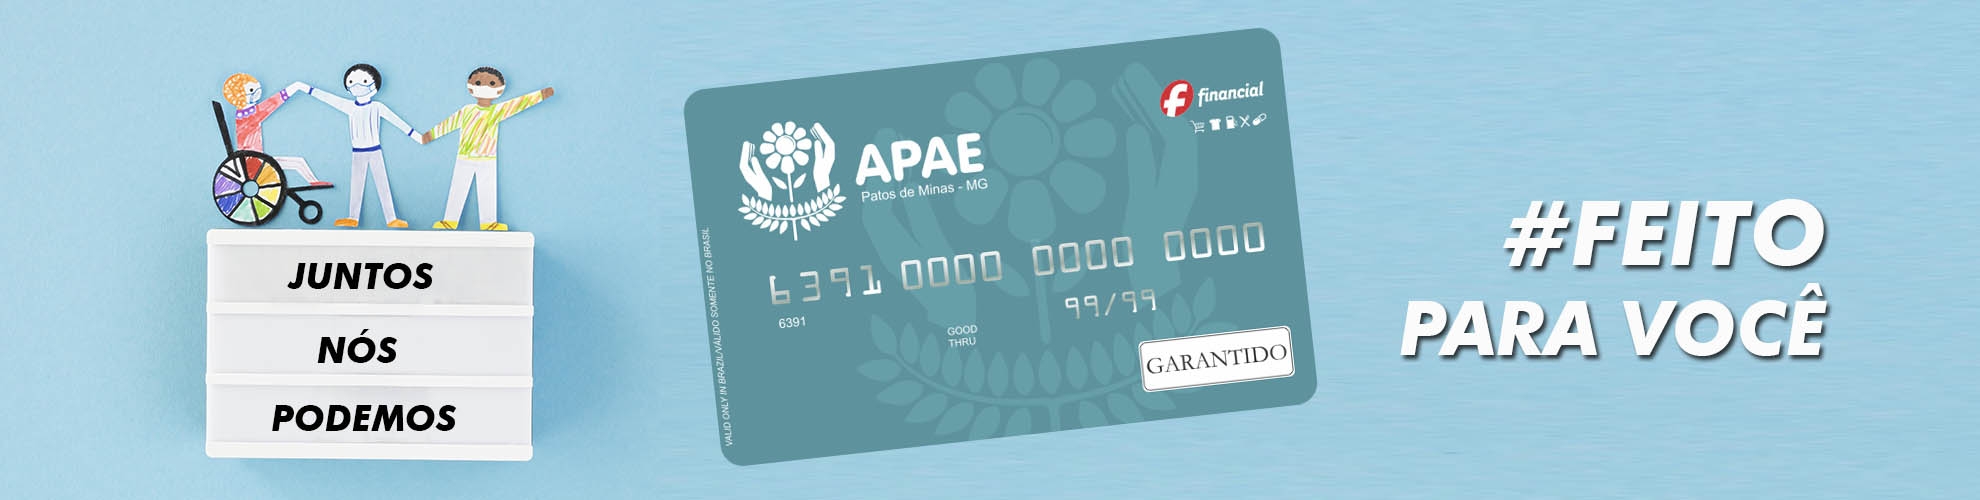 Cartão de Crédito APAE Patos de Minas